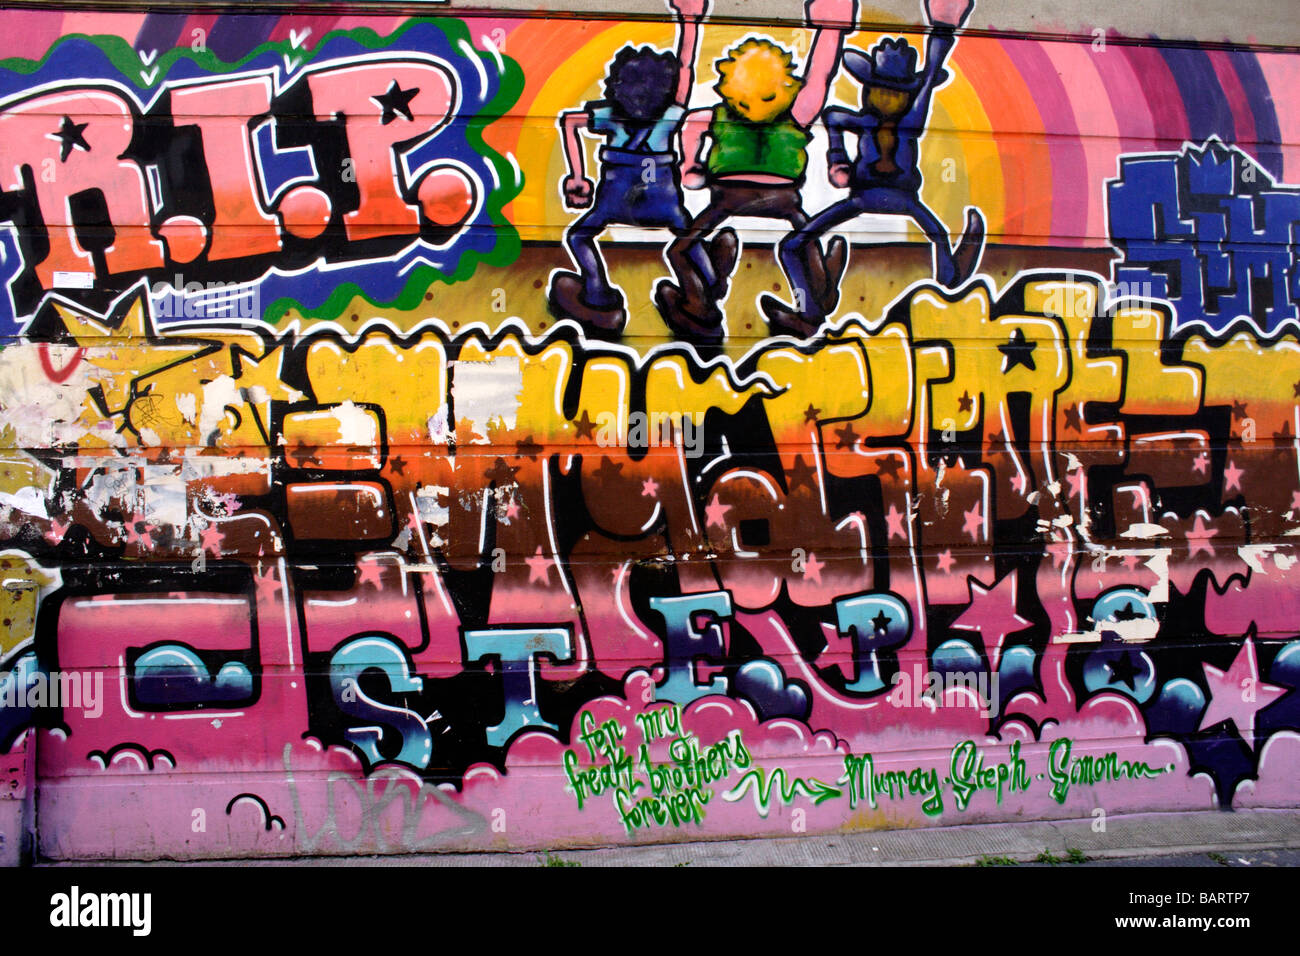 Graffiti Brick Lane London Stock Photo